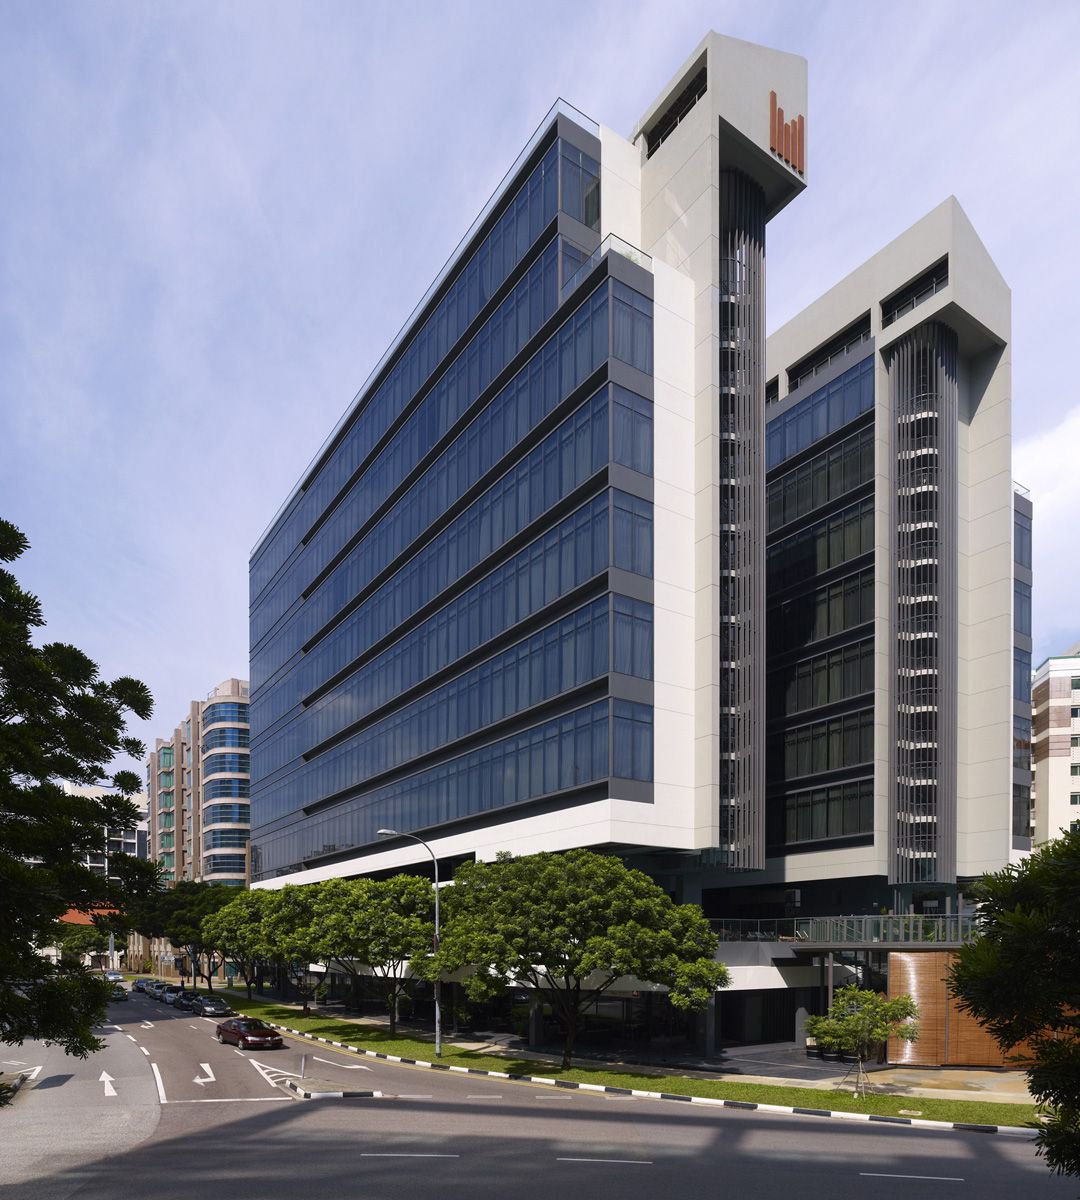 Image of STUDIO M HOTEL, Singapore